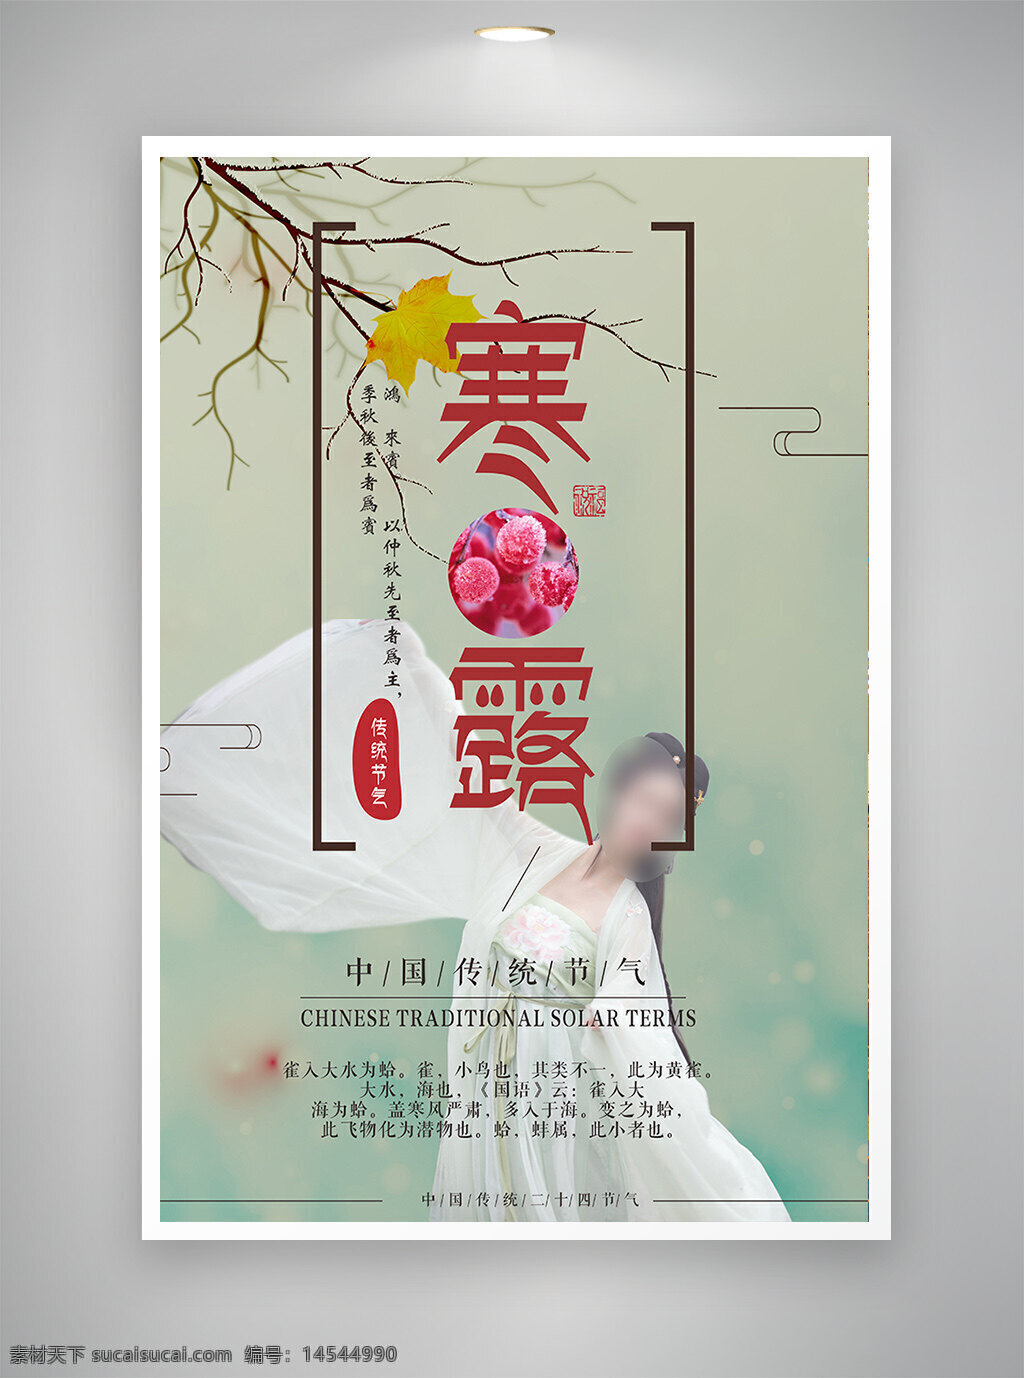 中国风海报 古风海报 促销海报 节日海报 寒露海报